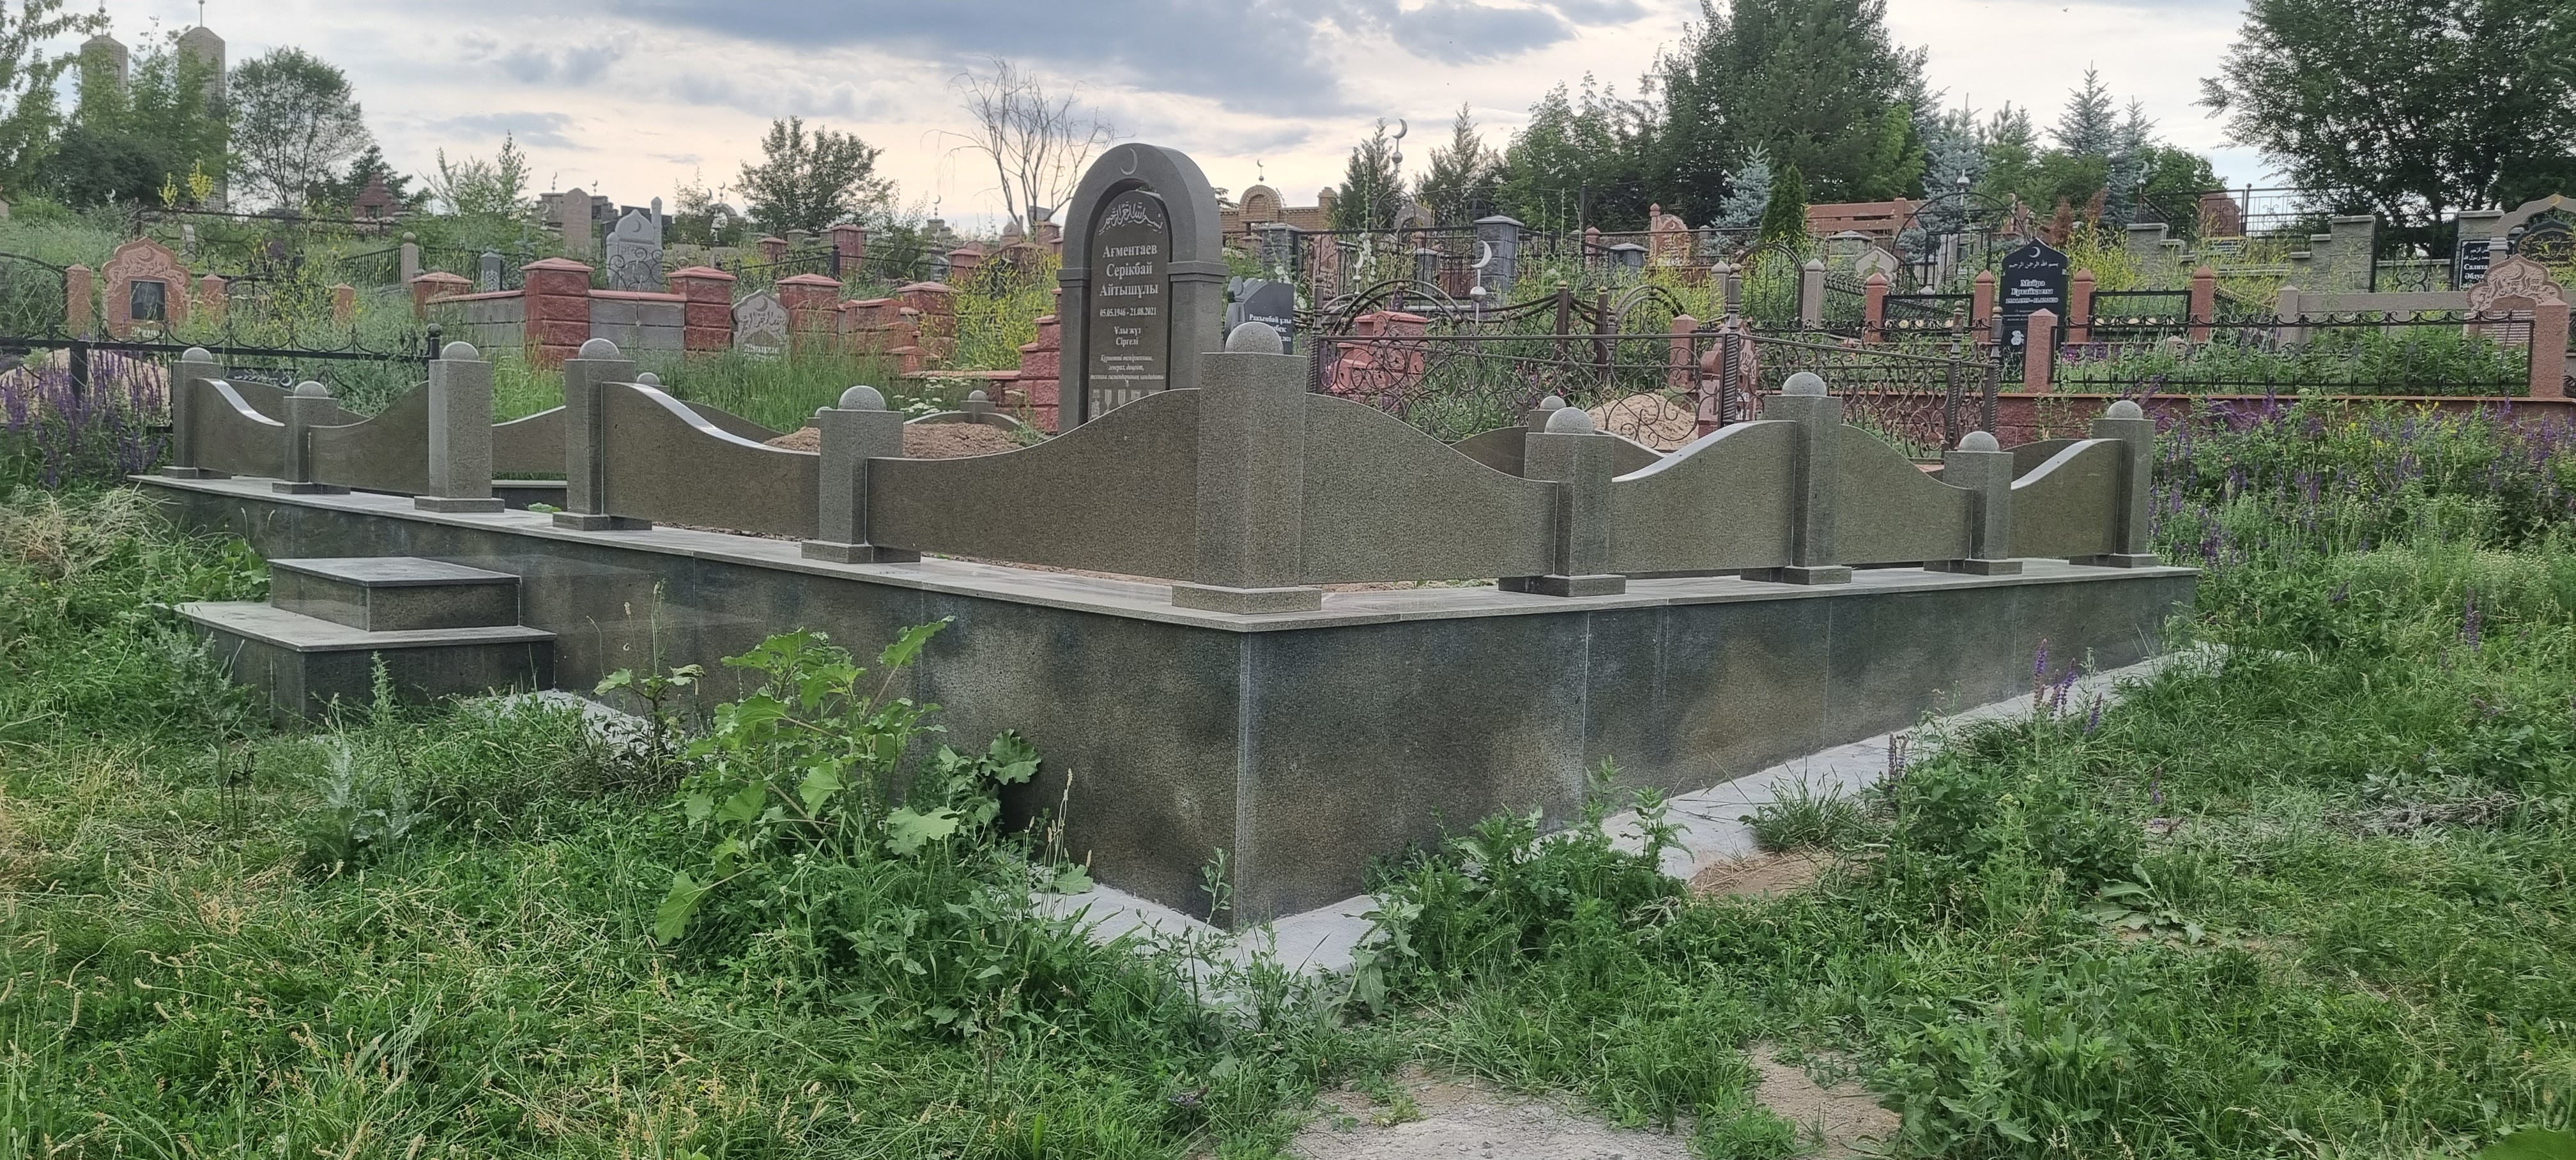 Изготовление надгробий и памятников в Алматы - высокое качество и надежность